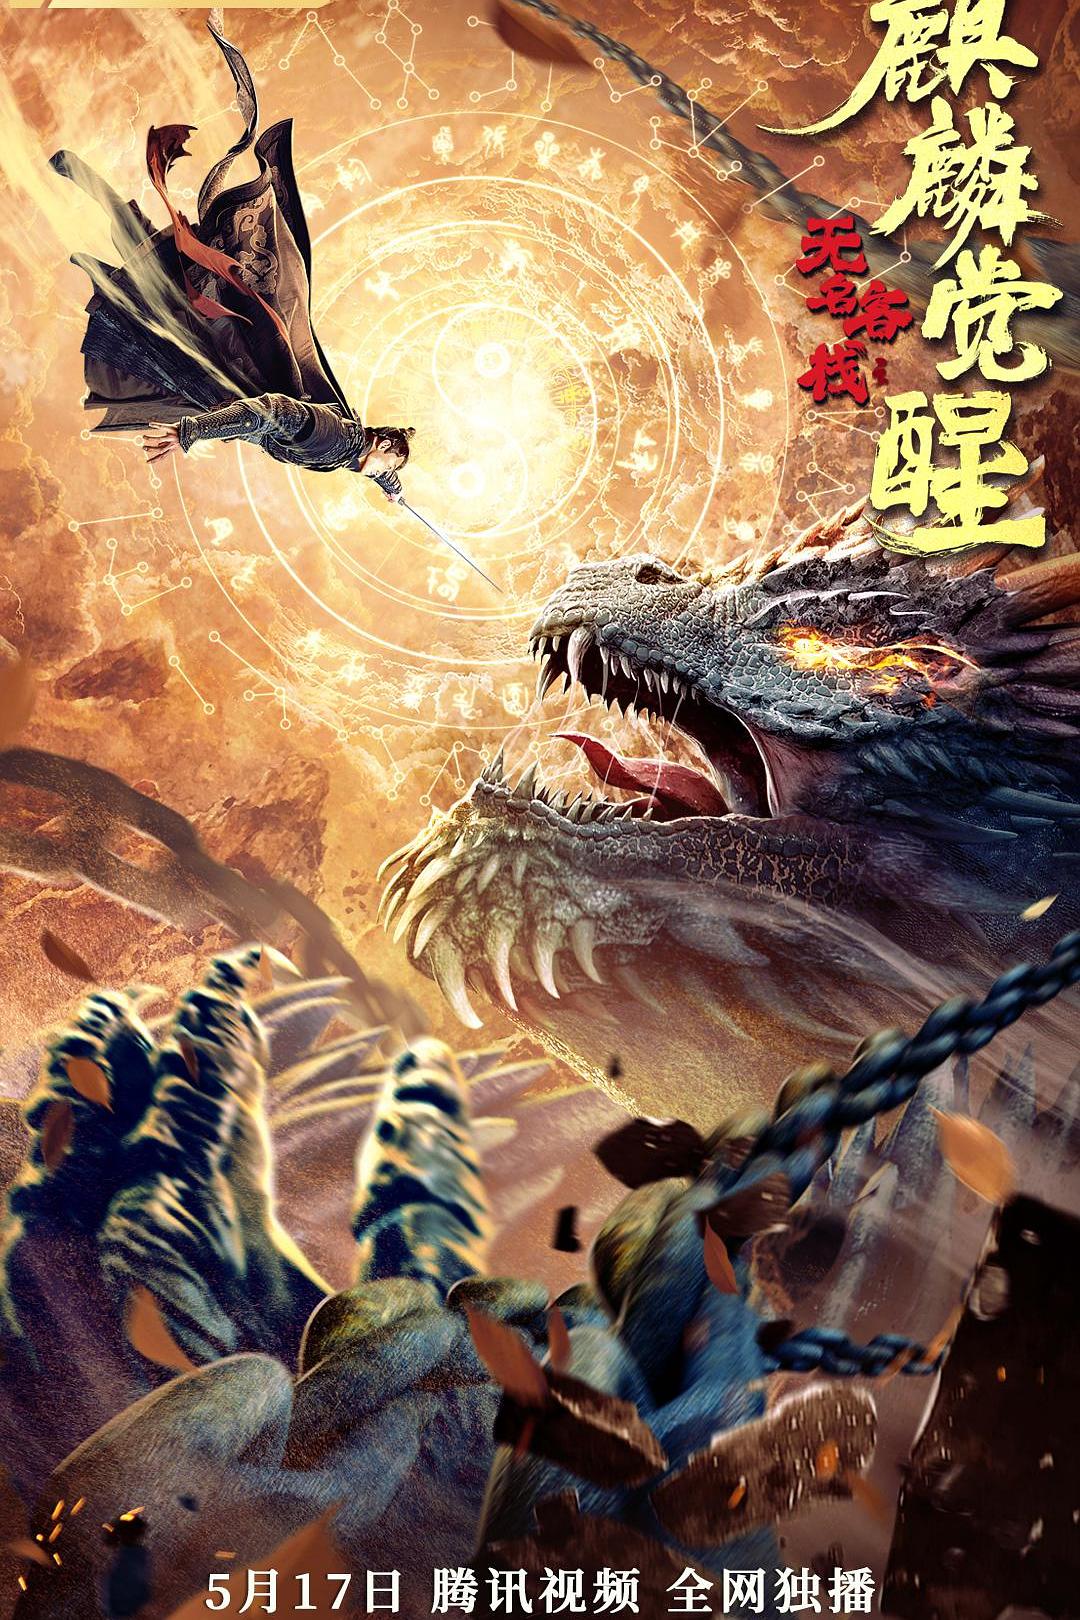 2021年郭鑫,赵杰奇幻武侠片《无名客栈之麒麟觉醒》1080P国语中字